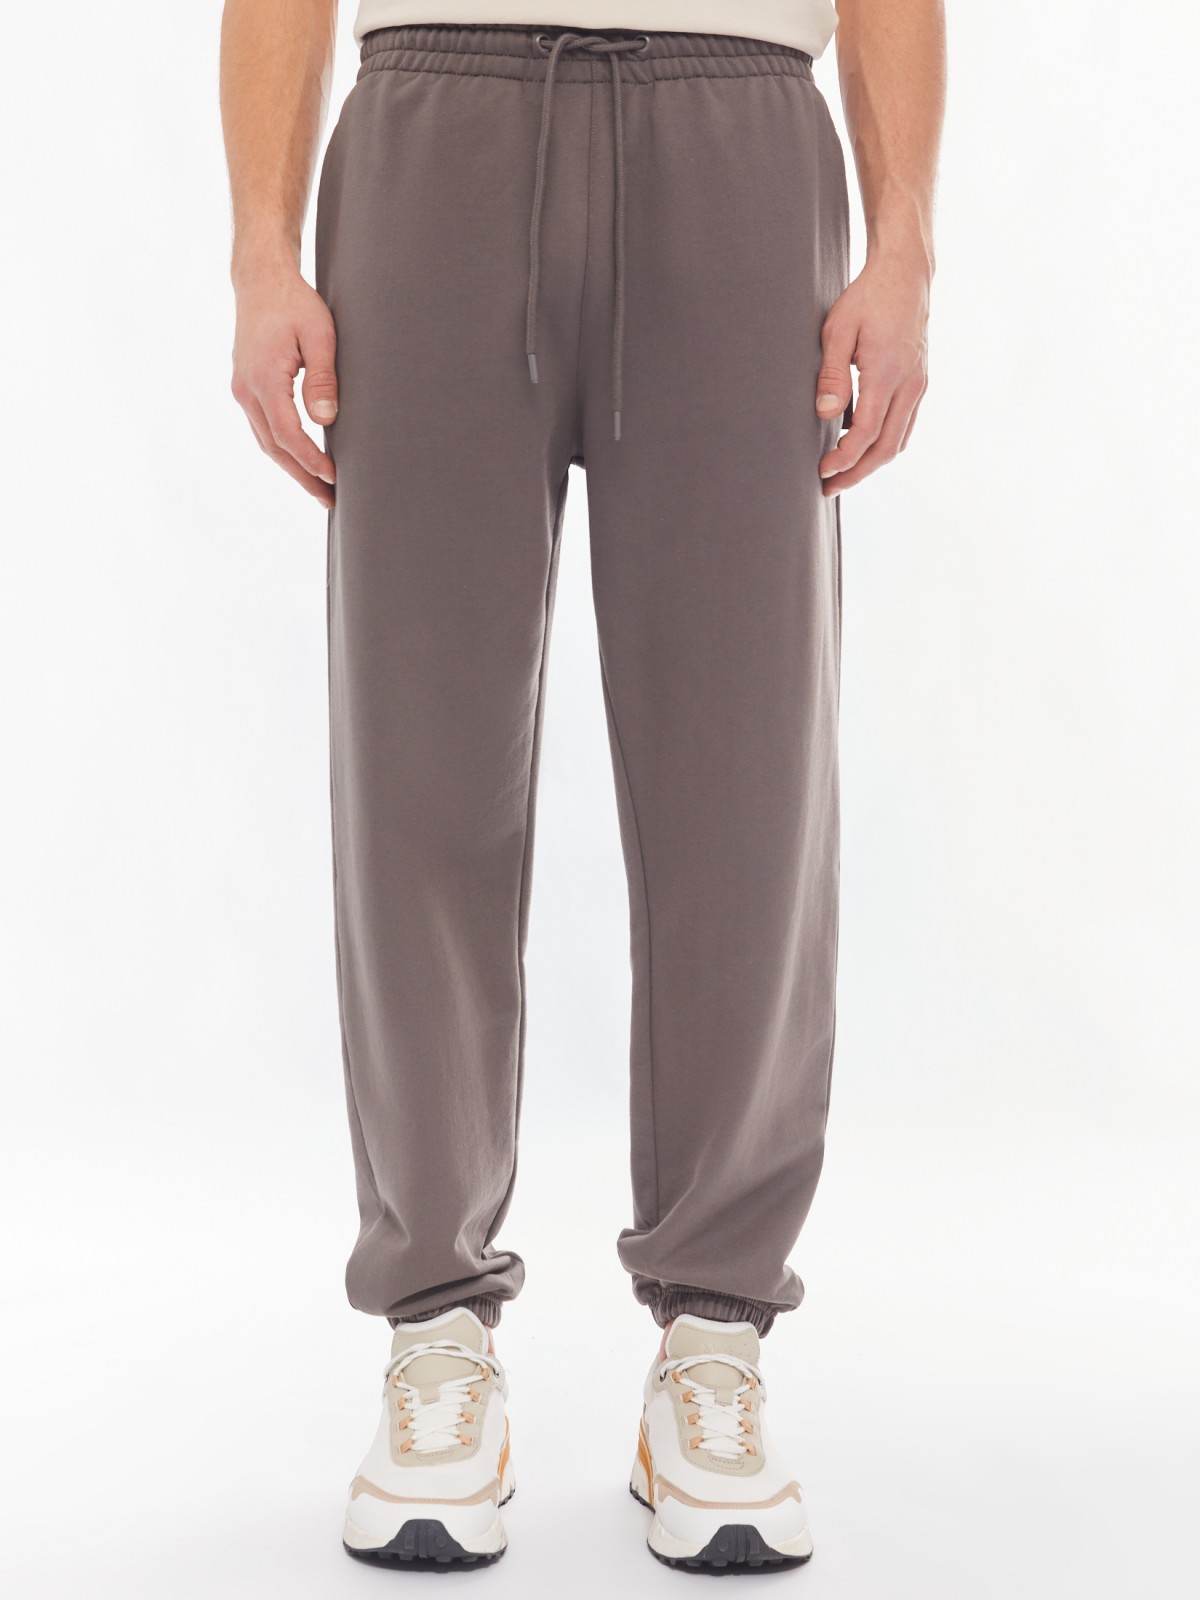 Трикотажные брюки-джоггеры в спортивном стиле zolla 014137660042, цвет серый, размер S - фото 2